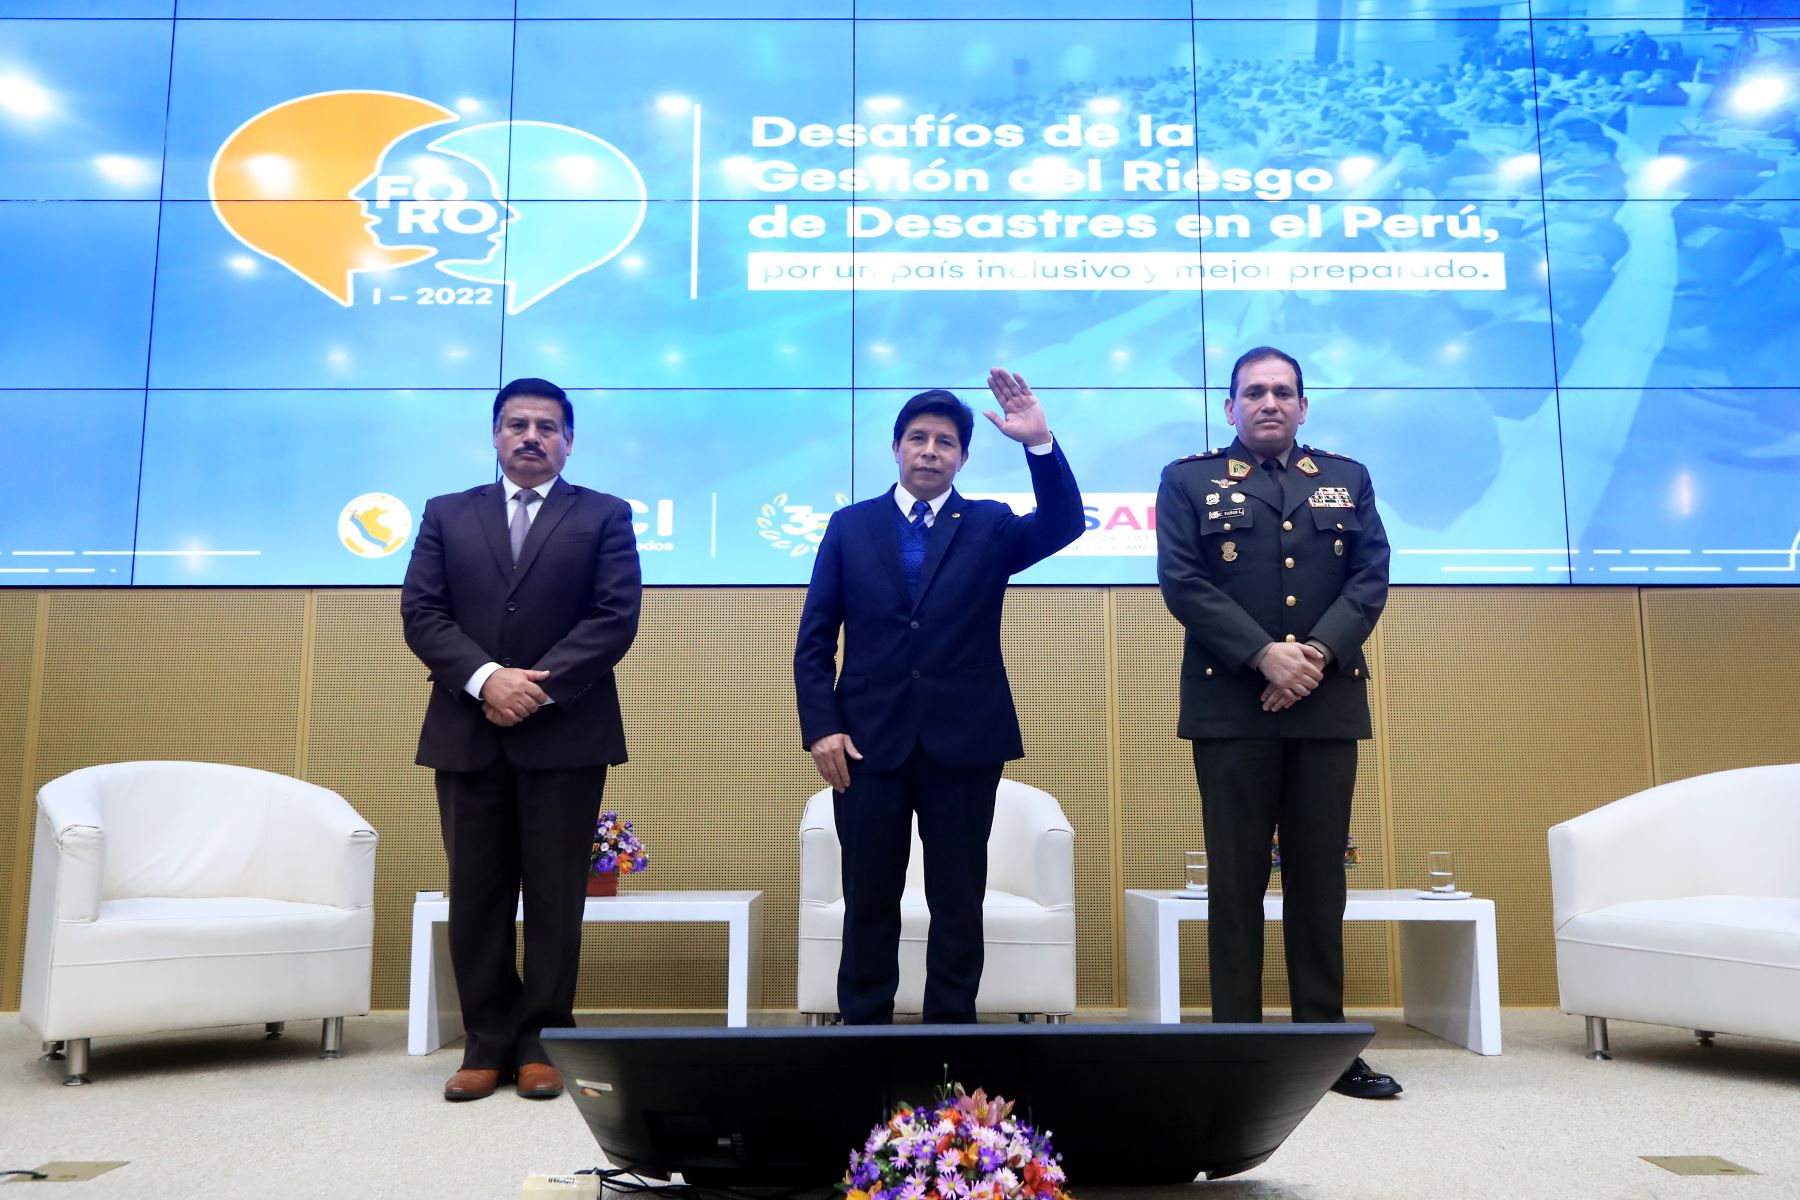 El Presidente de la República, Pedro Castillo, junto al ministro de Defensa, Daniel Barragán, participan en el I Foro “Desafíos de la Gestión del Riesgo de Desastres en el Perú, por un país inclusivo y mejor preparado”, en el marco del 35.° aniversario de creación del INDECI.
Foto: ANDINA/MINDEF